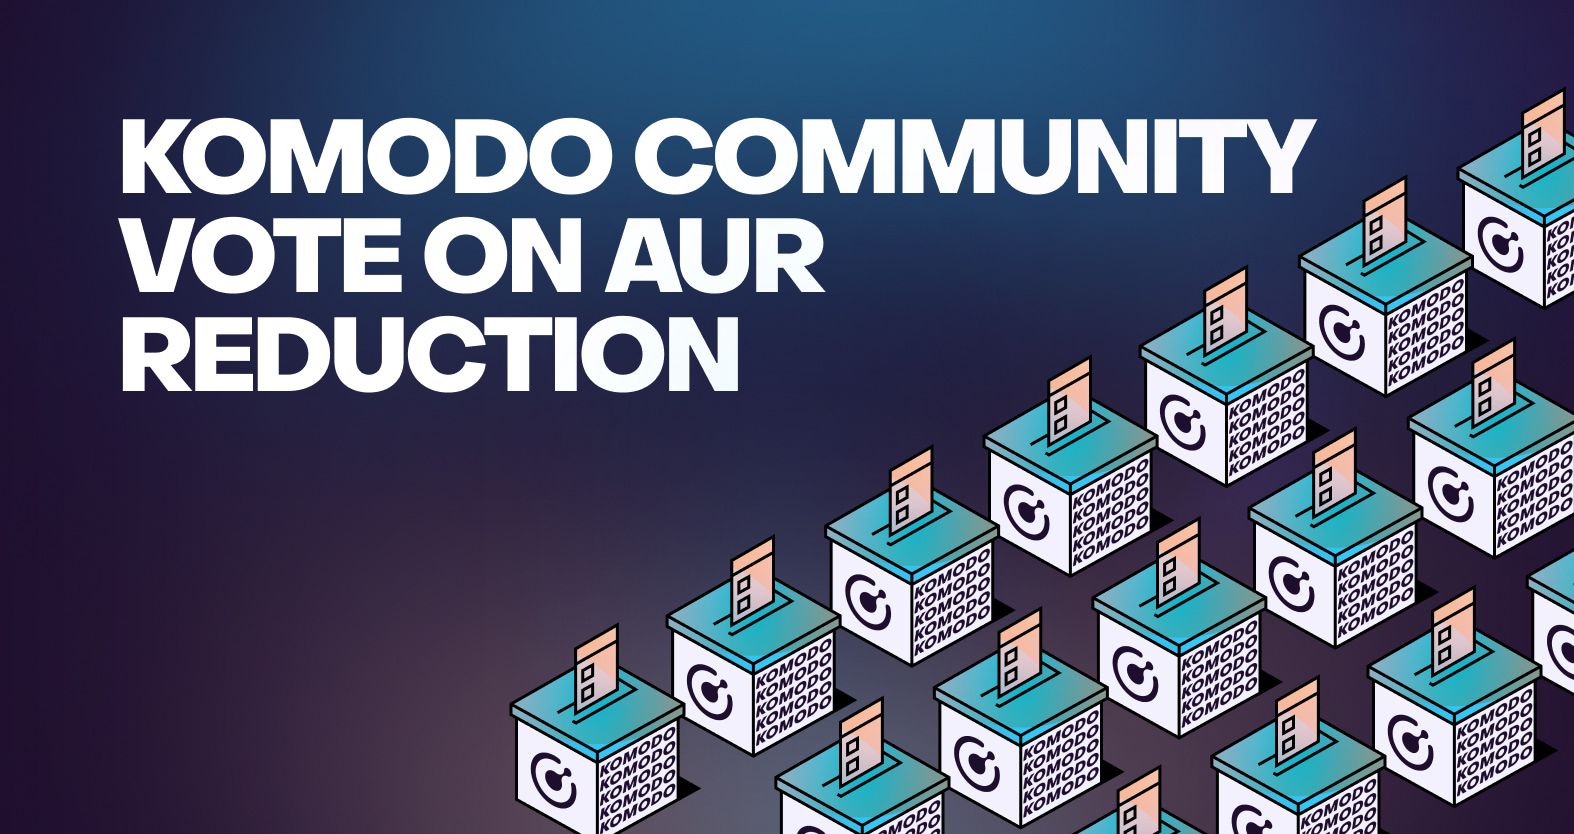 Komodo Community Vote on AUR Reduction